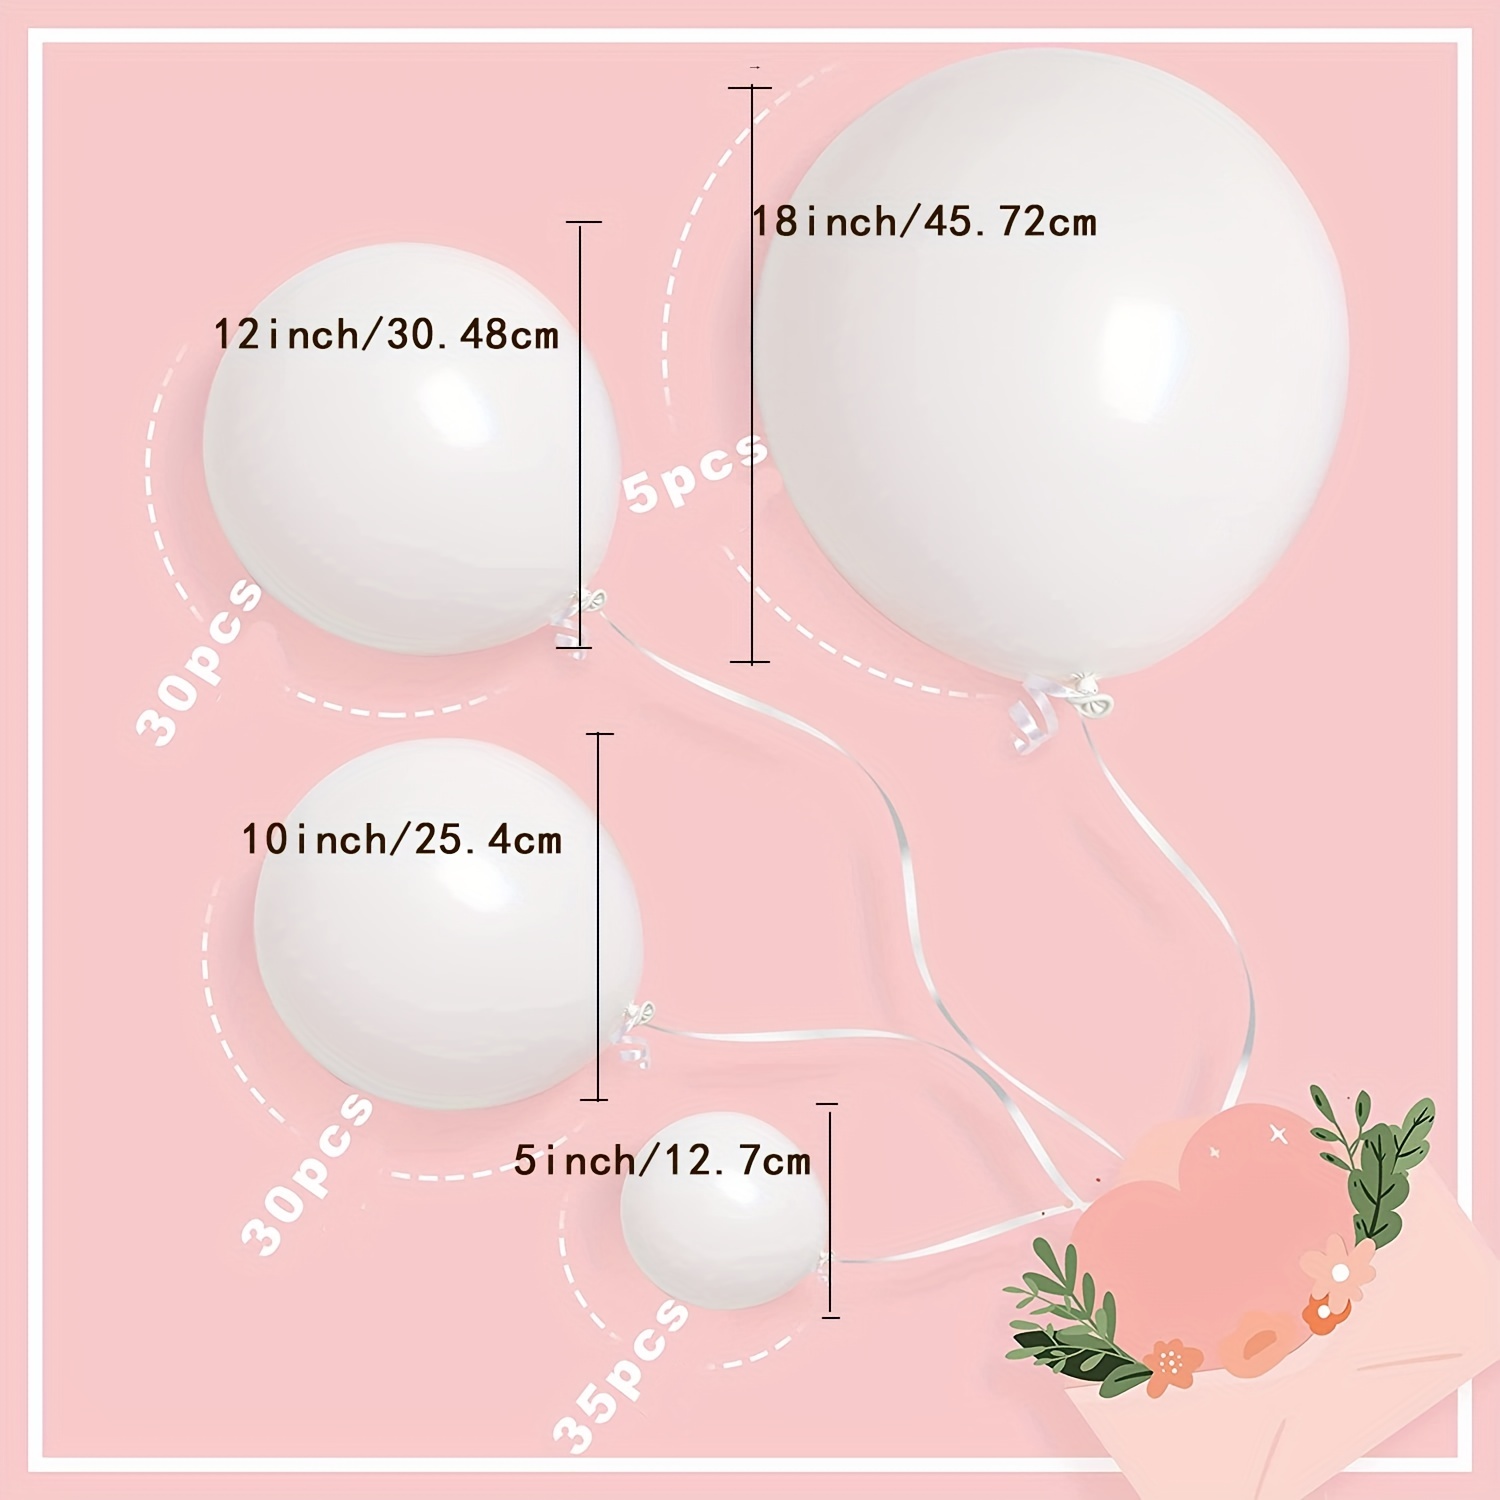  Globos blancos, globos de látex blanco de 12 pulgadas, 50 globos  de látex para decoración de fiestas, bodas, cumpleaños, bodas : Hogar y  Cocina